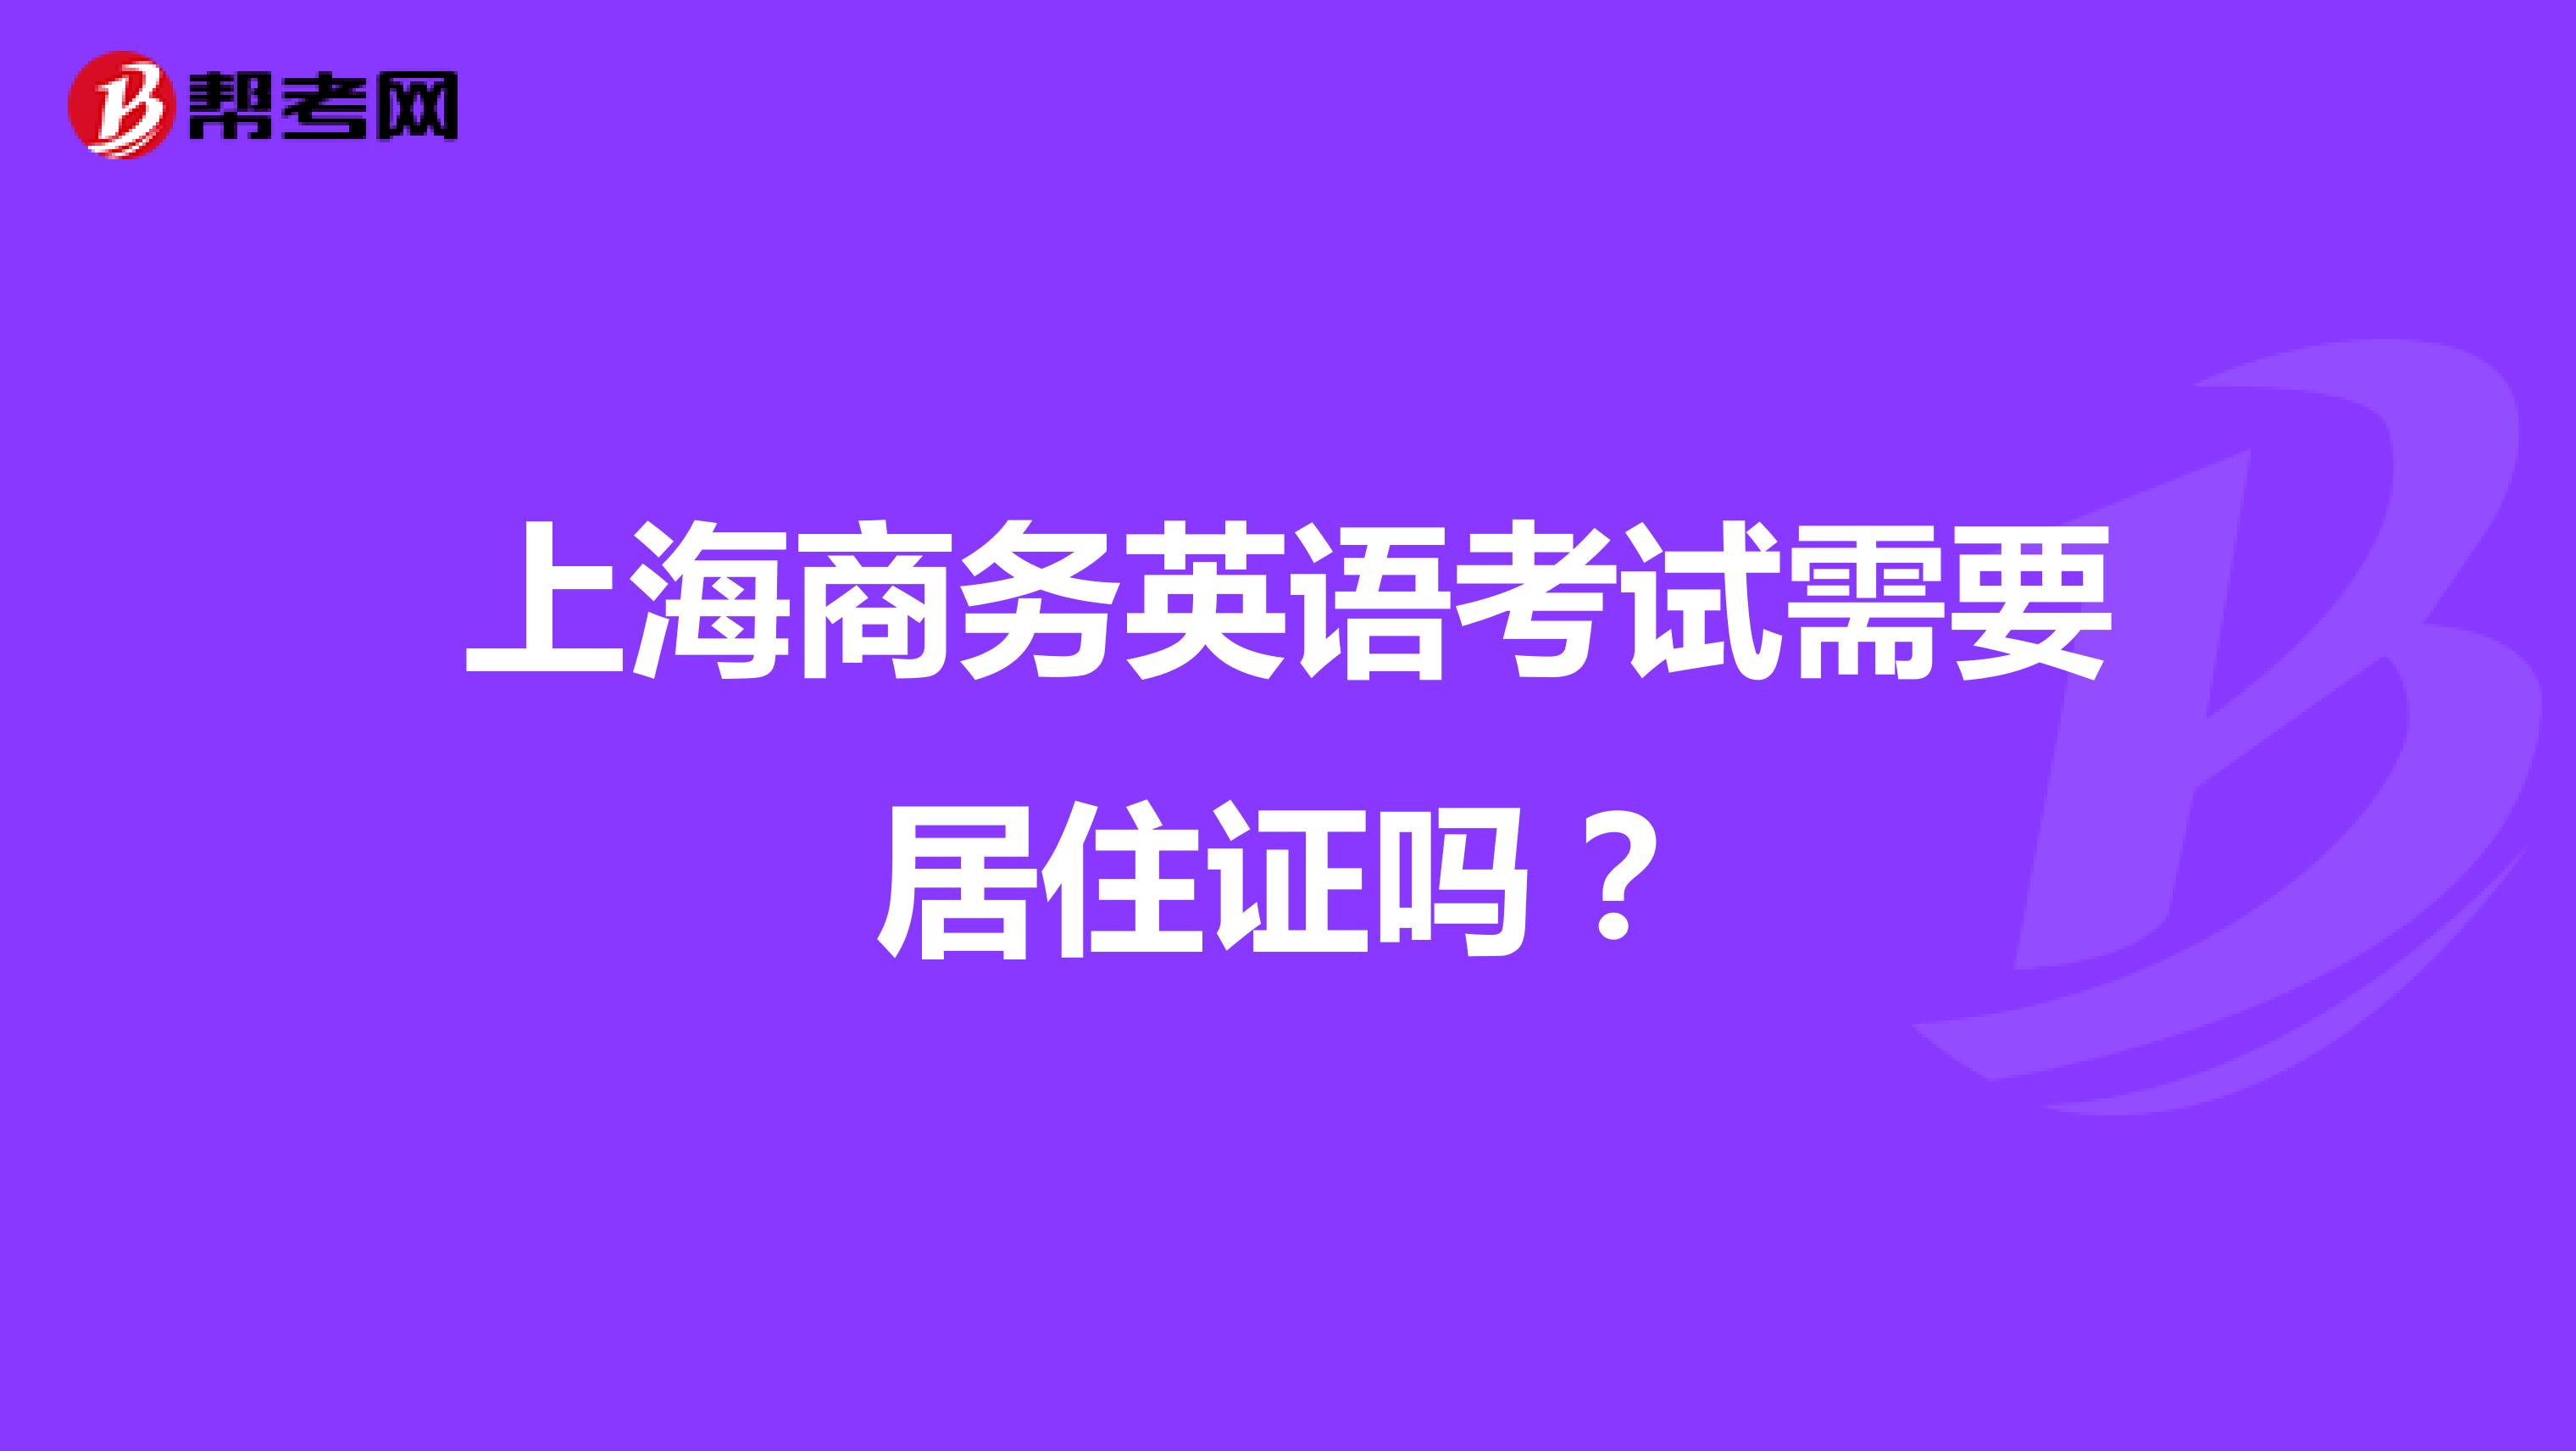 上海商务英语考试需要居住证吗？